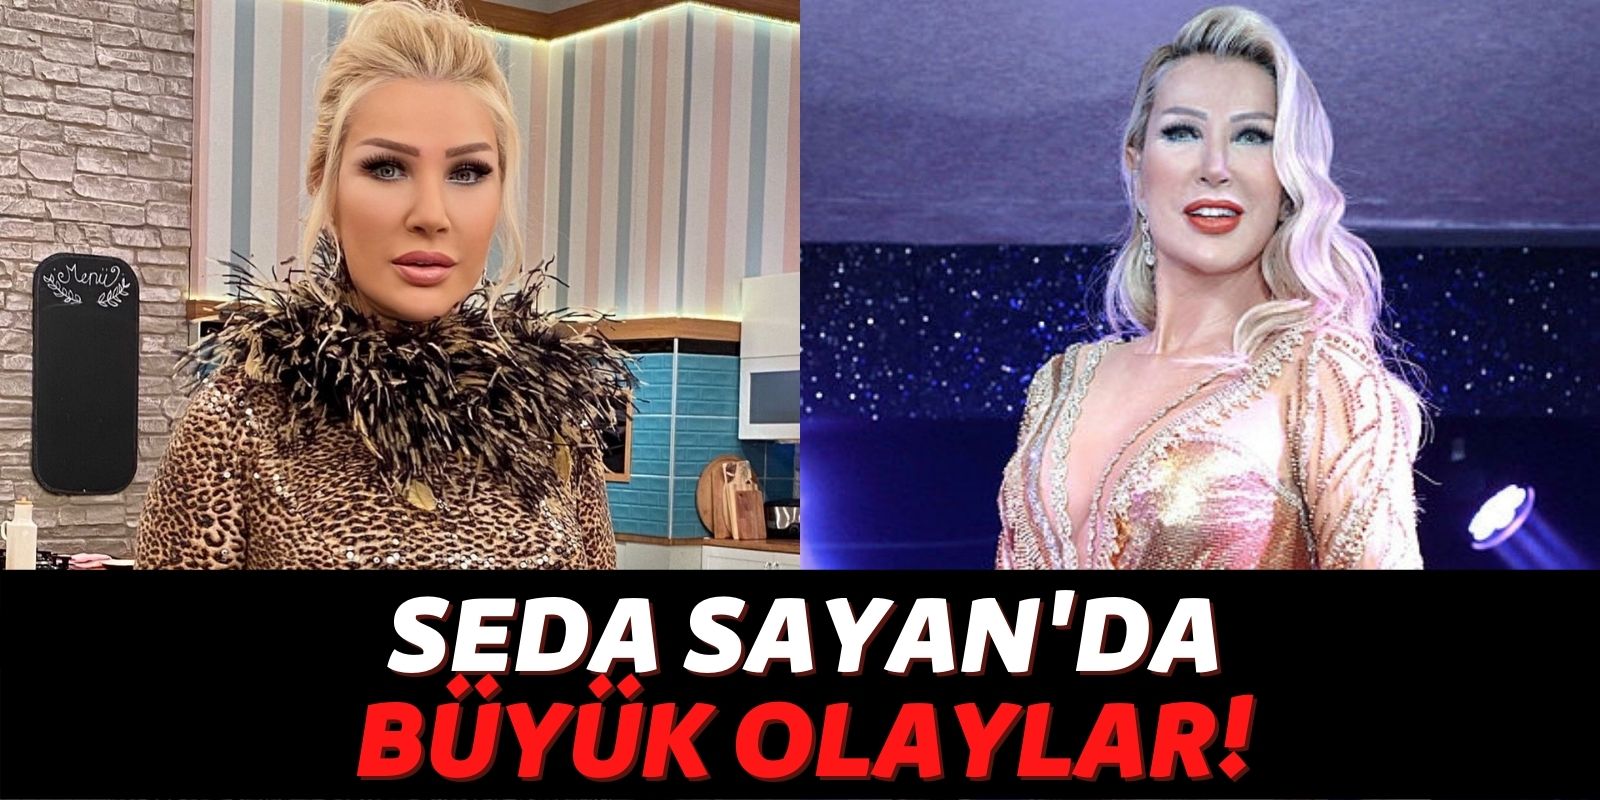 Seda Sayan Konsept Değişikliğine Gitti Stüdyo Karıştı: “Yabancı Gelin” Skandalı Tüm Türkiye’yi Ayağa Kaldırdı!